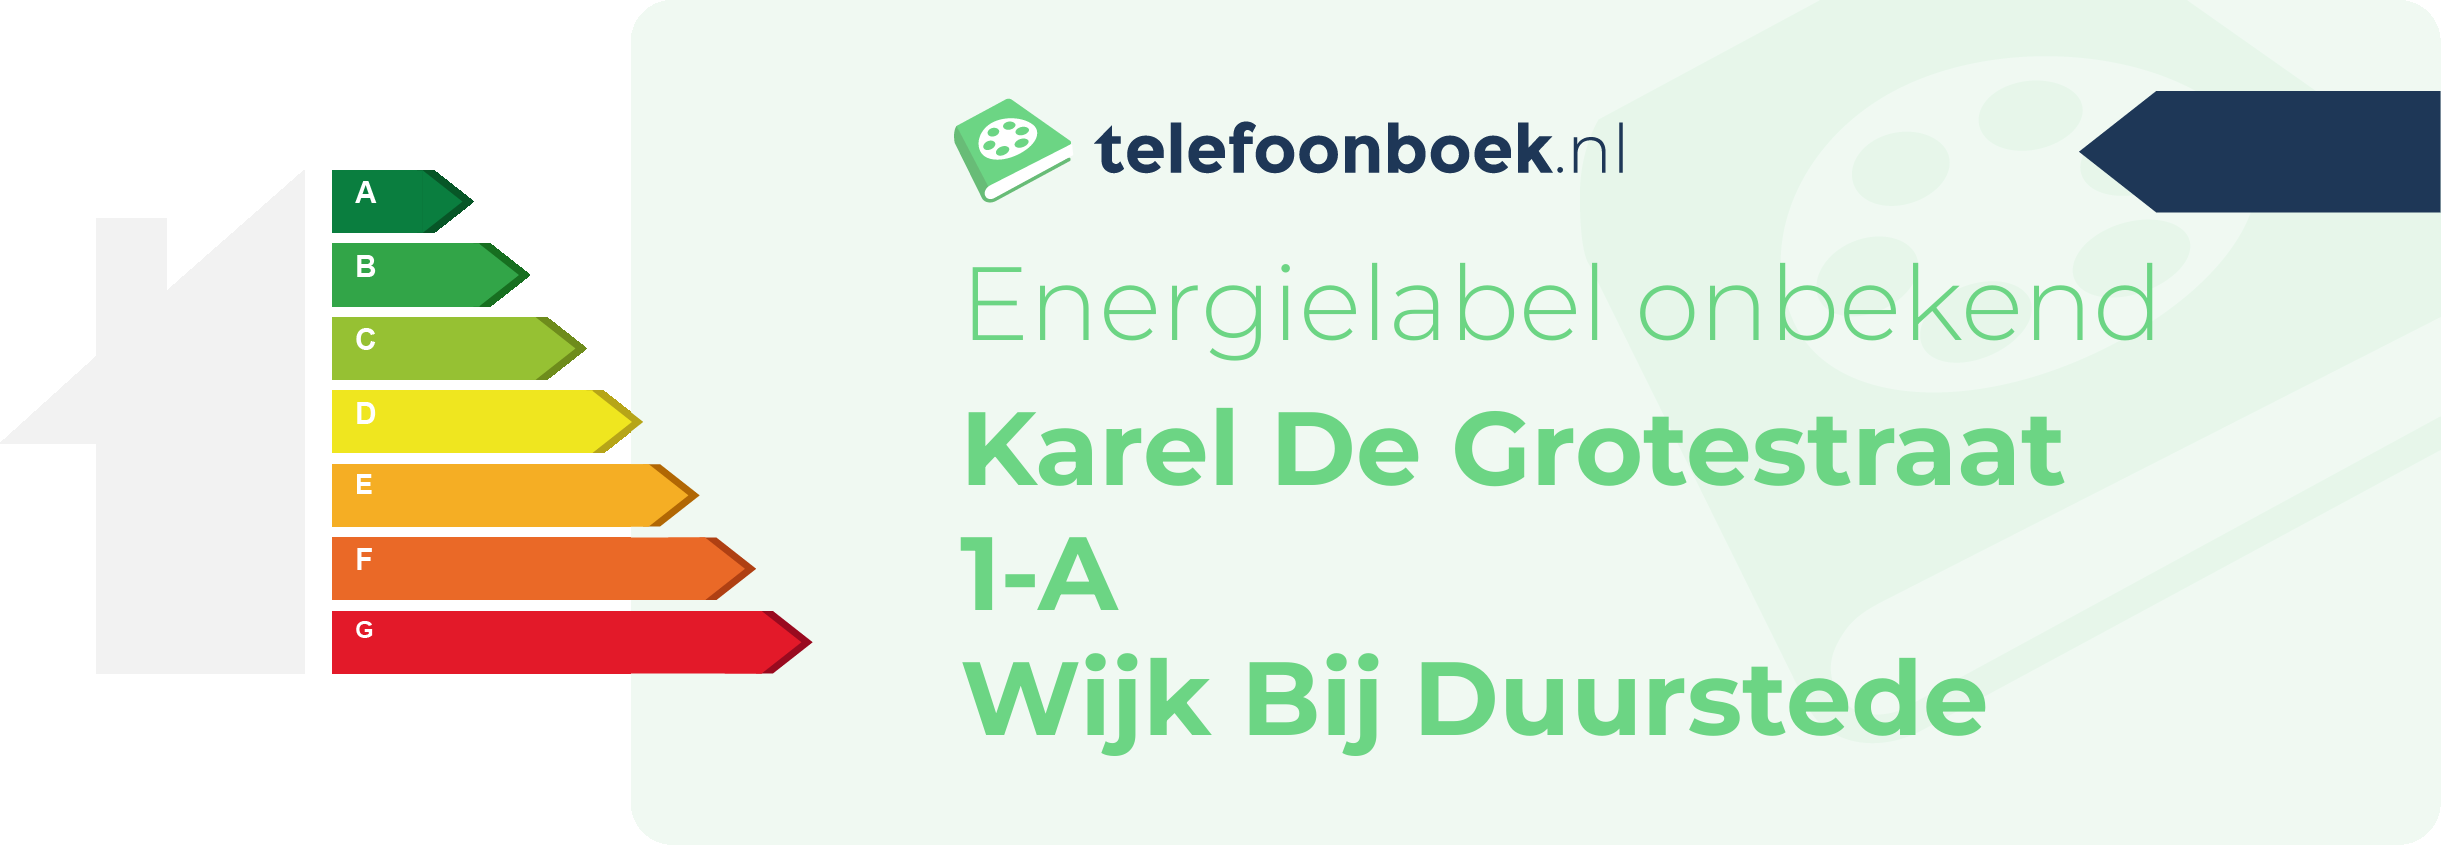 Energielabel Karel De Grotestraat 1-A Wijk Bij Duurstede